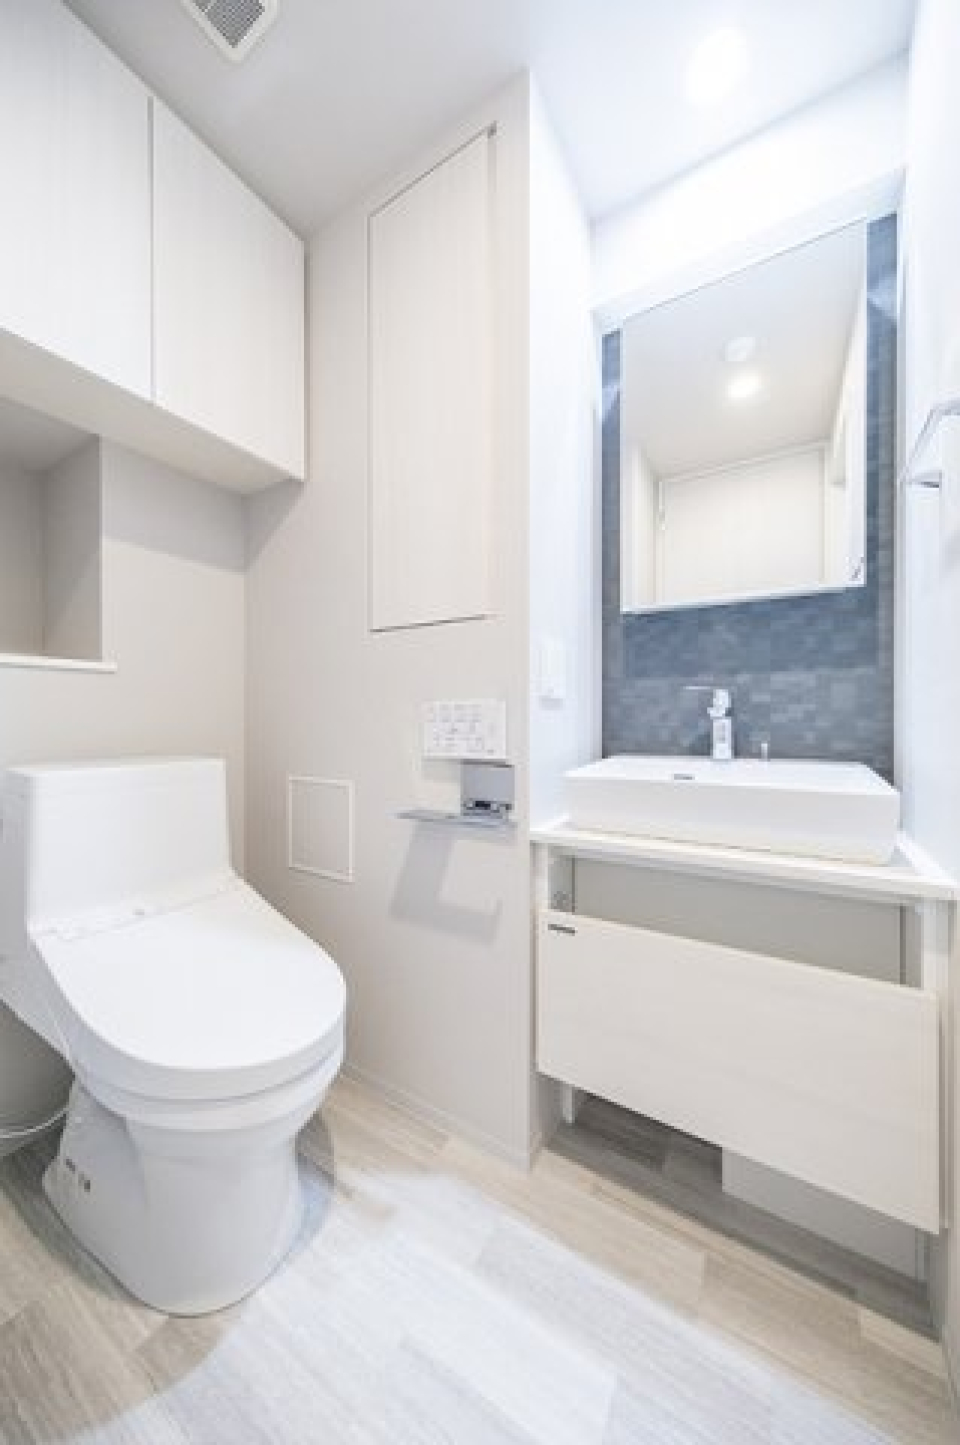 清潔感のある洗面台も、利便性とデザイン性を兼ね備えた空間となっています。
※写真は同タイプ住戸です。